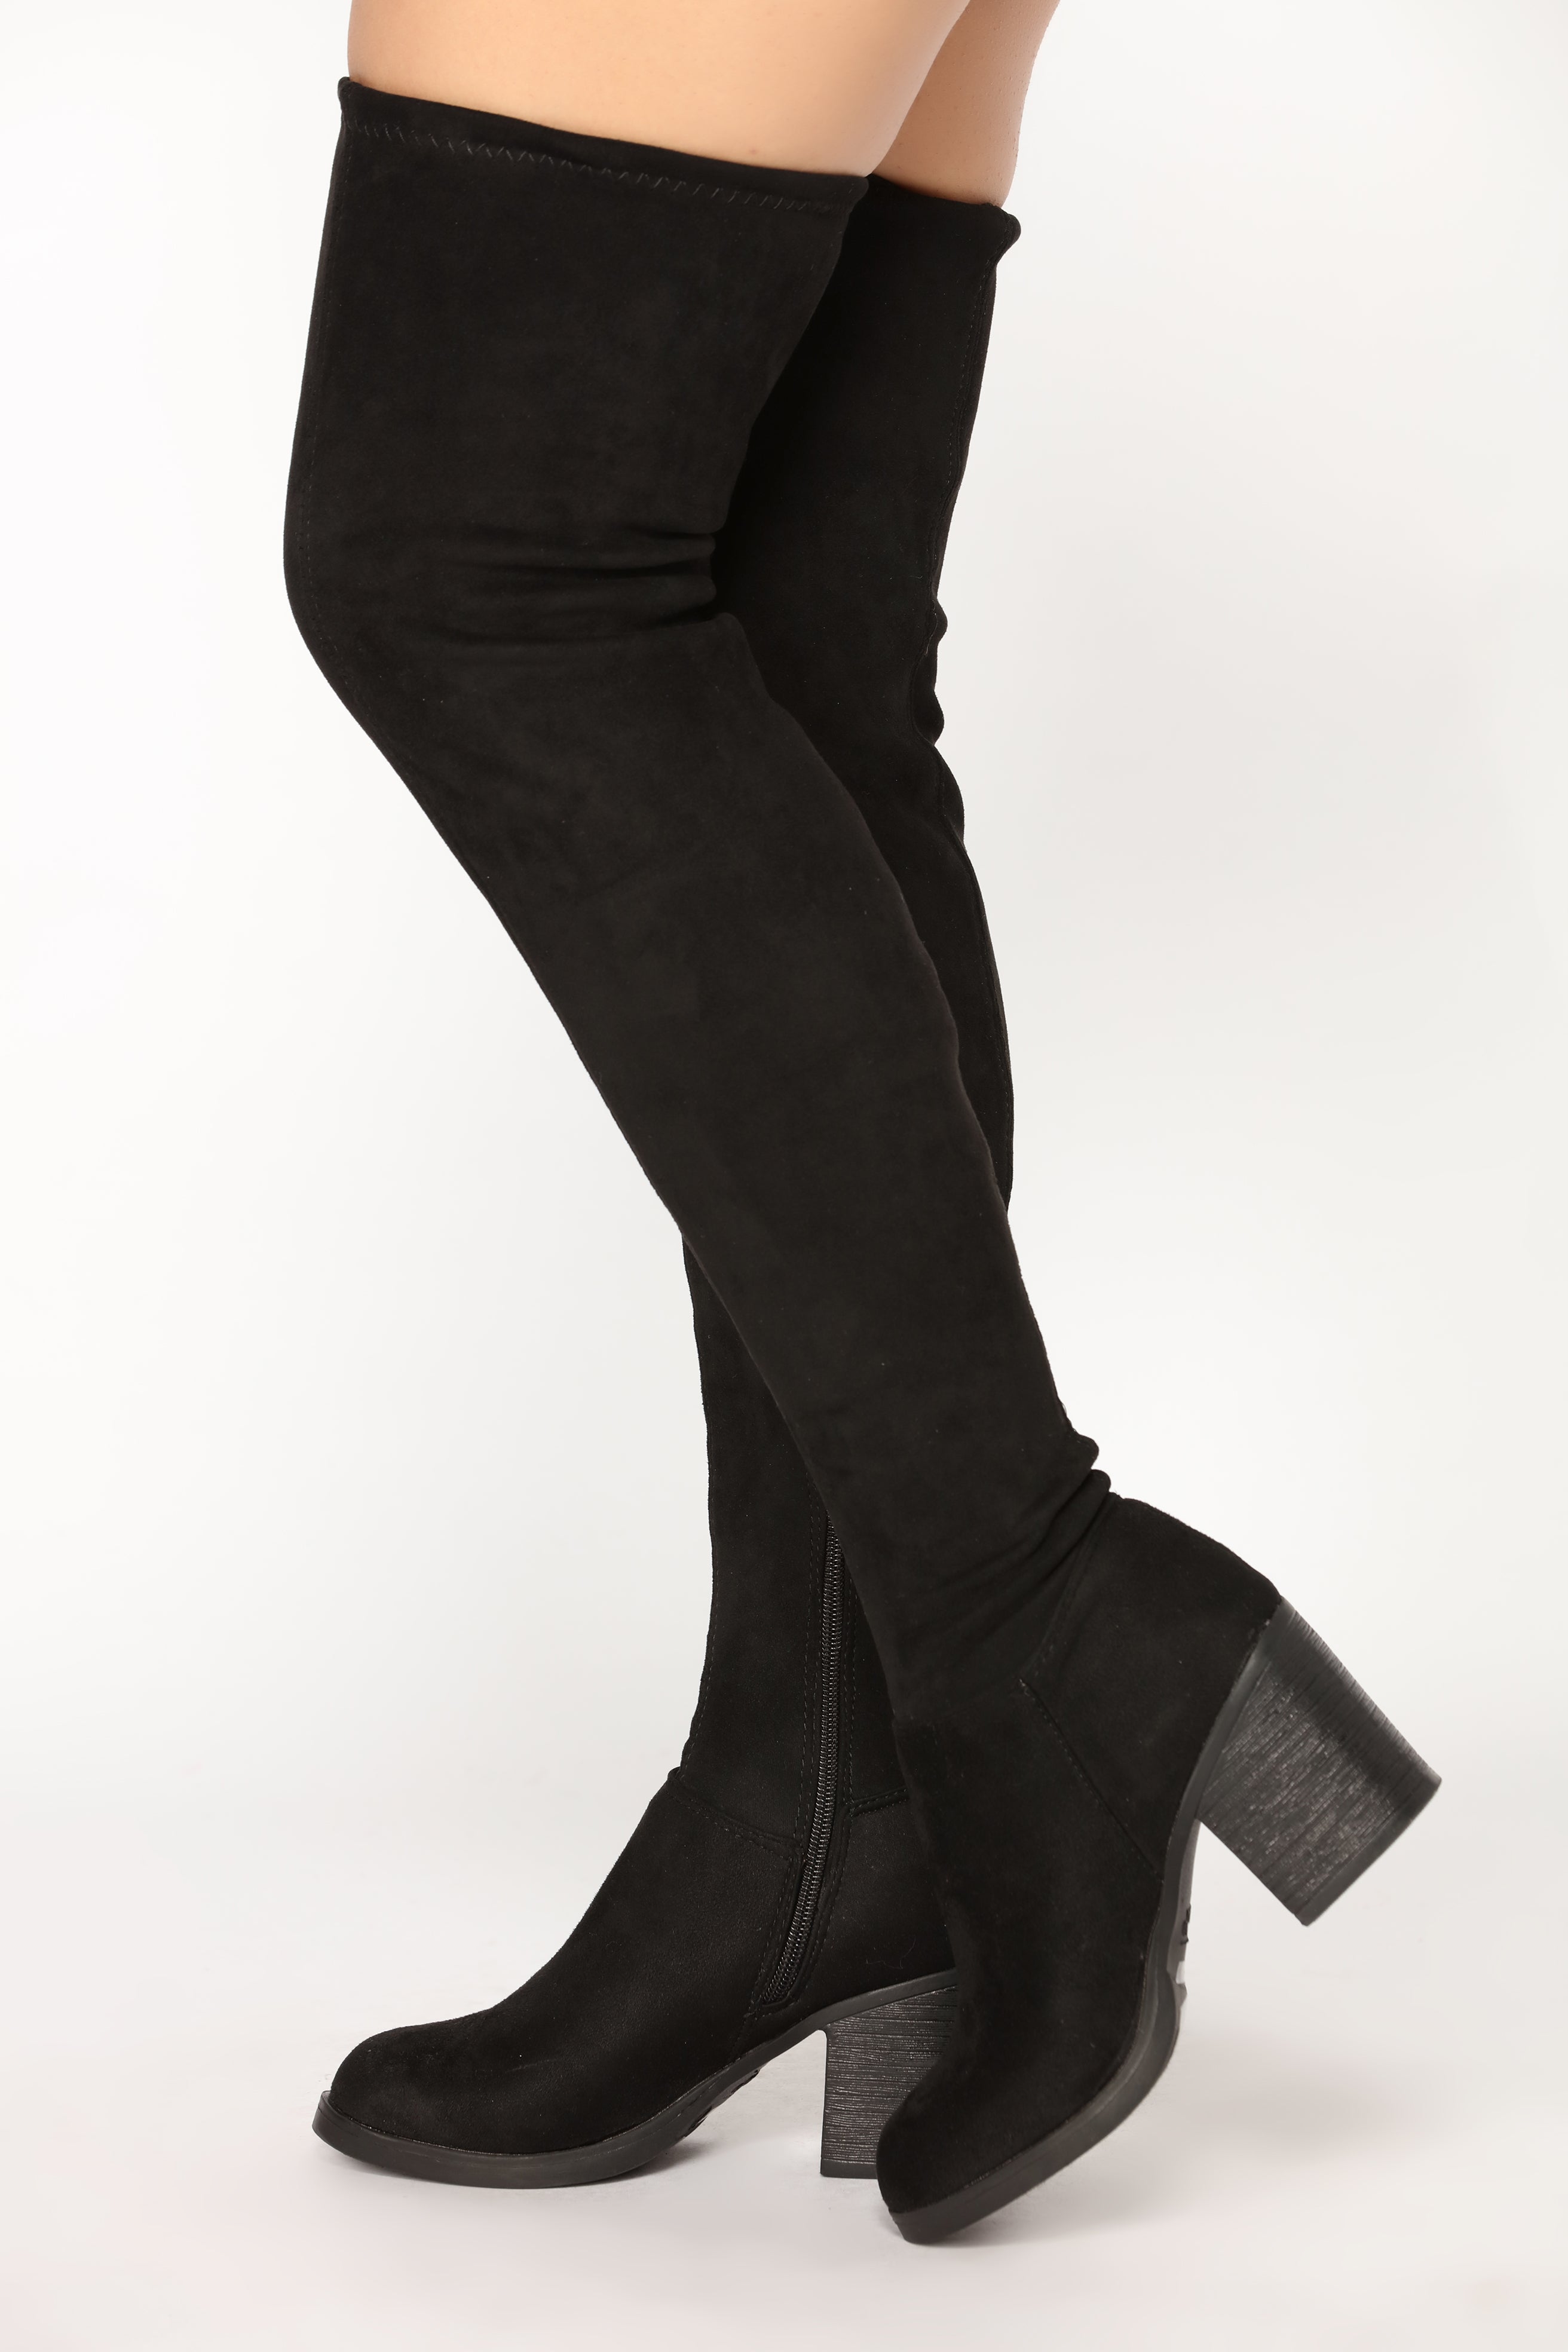 fashion nova high knee boots